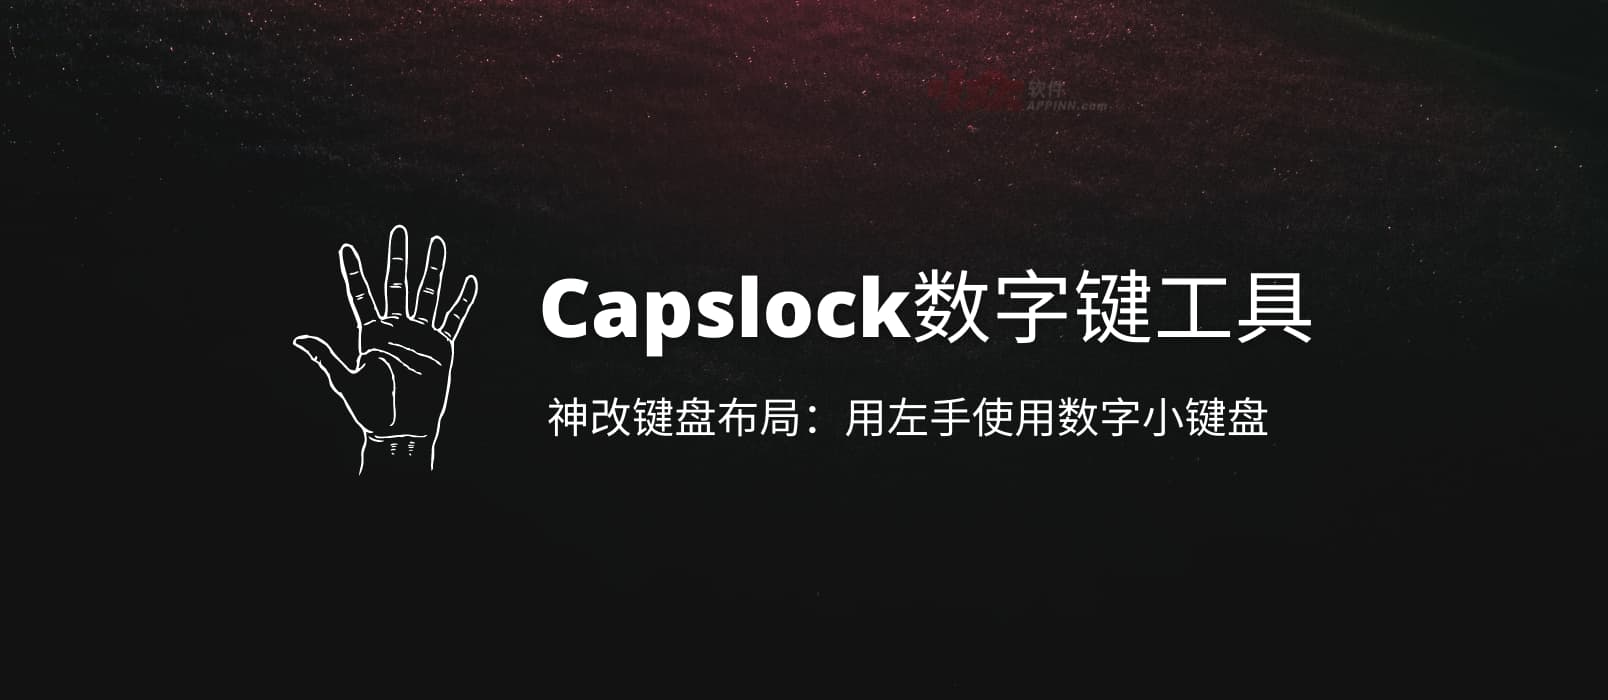 Capslock数字键工具 - 用 AHK 神改键盘布局：用左手使用数字小键盘